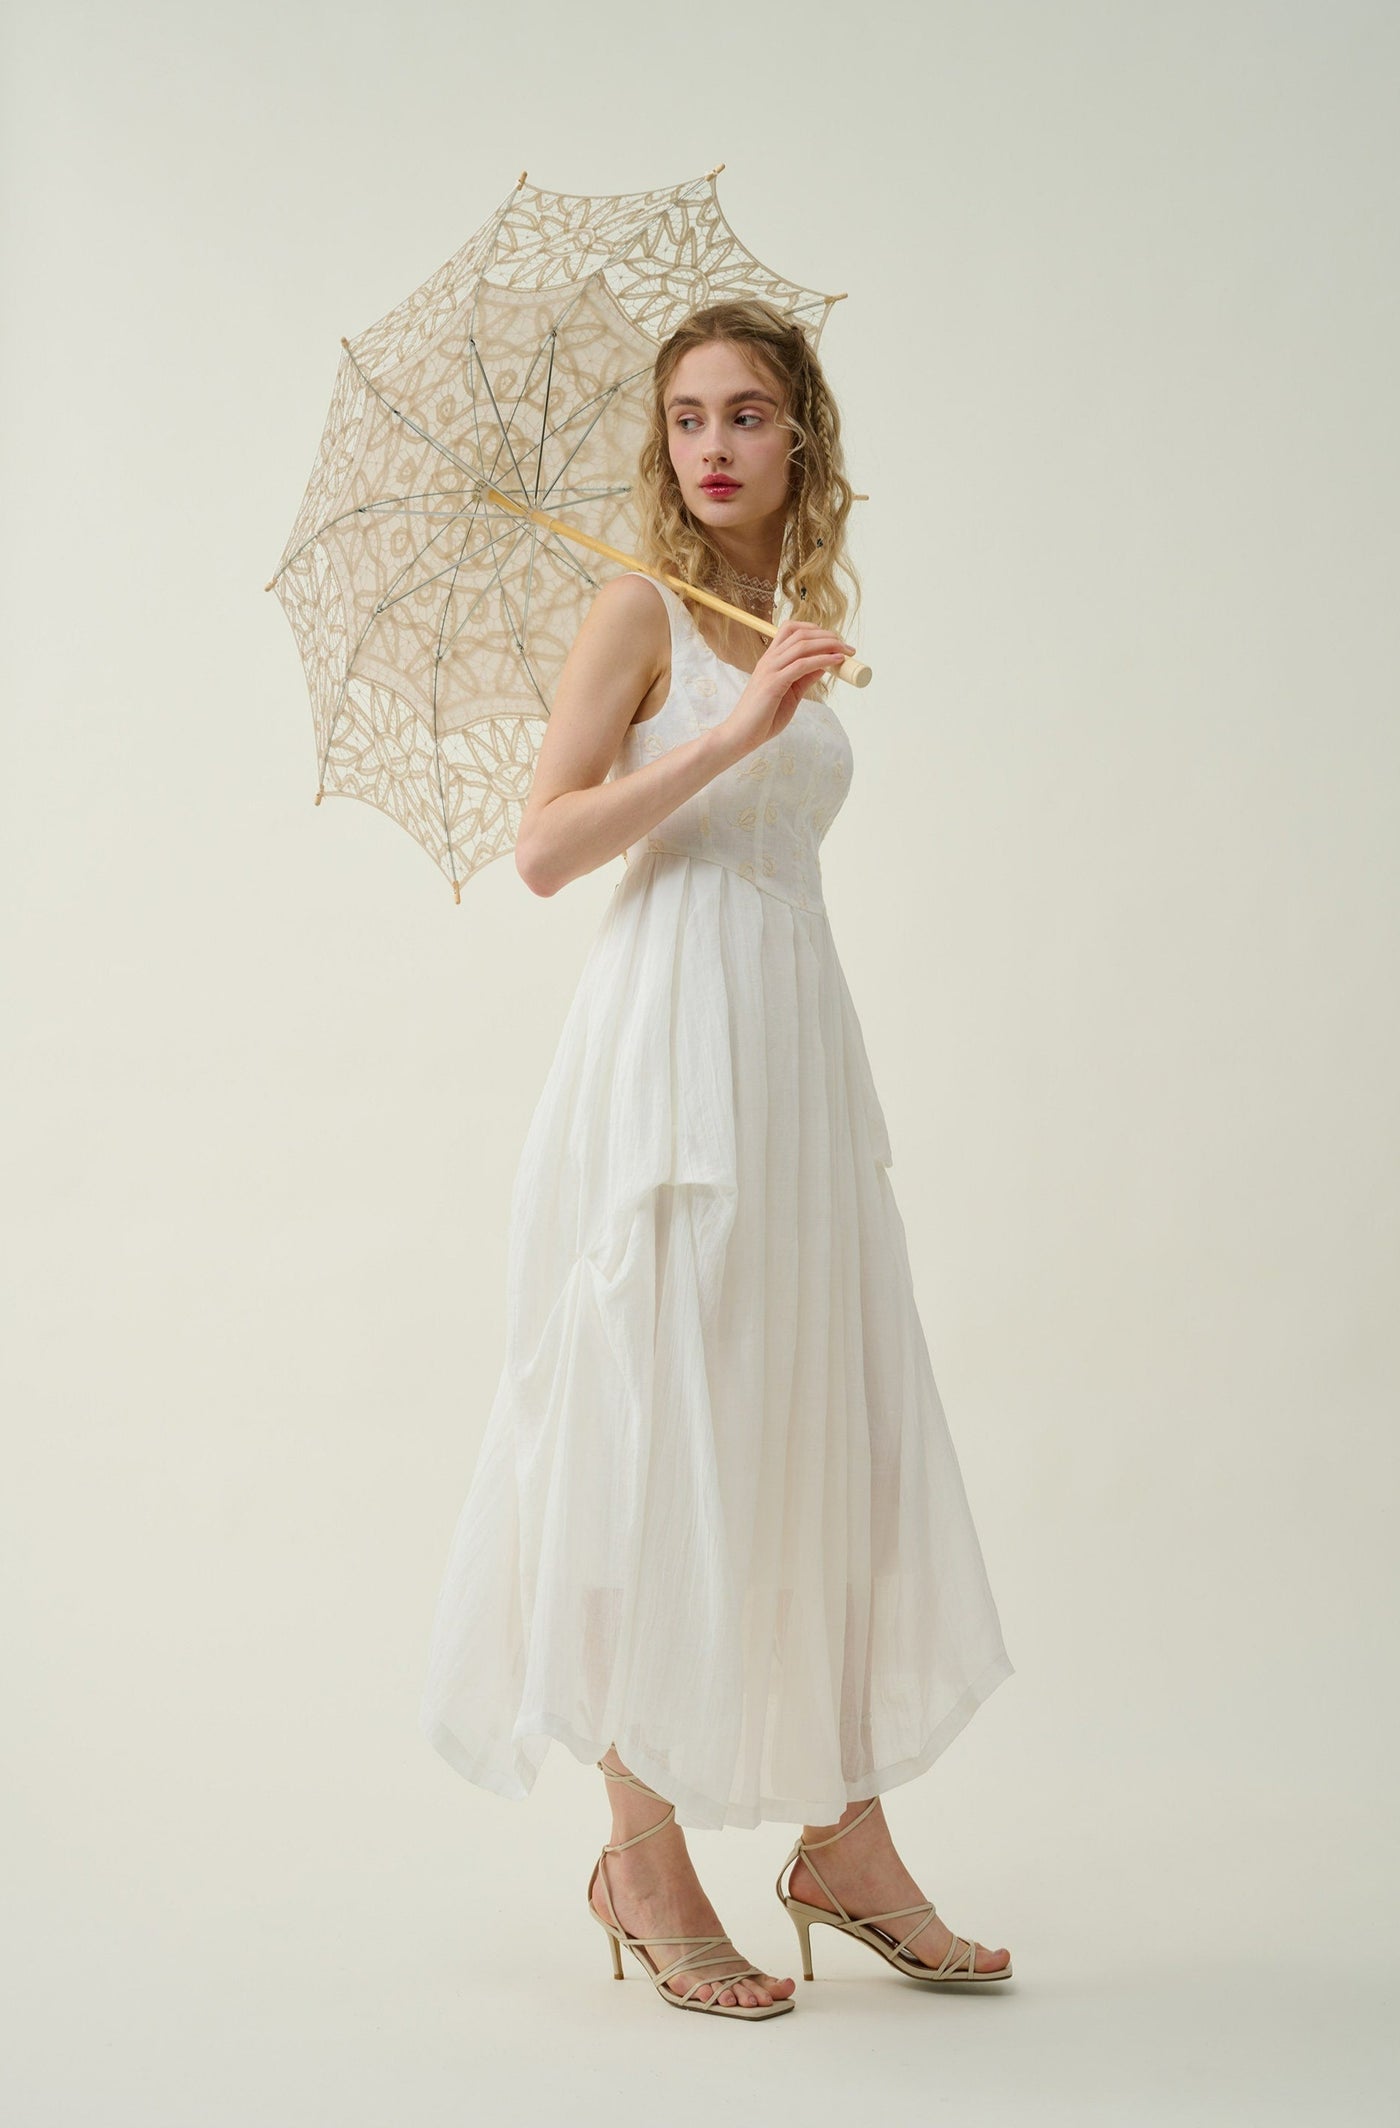 Linen Dress in Grass, Vintage Linen Skirt, Corset Linen Dress, Elegant Dress,  Wedding Dress, Summer Dress Linennaive 